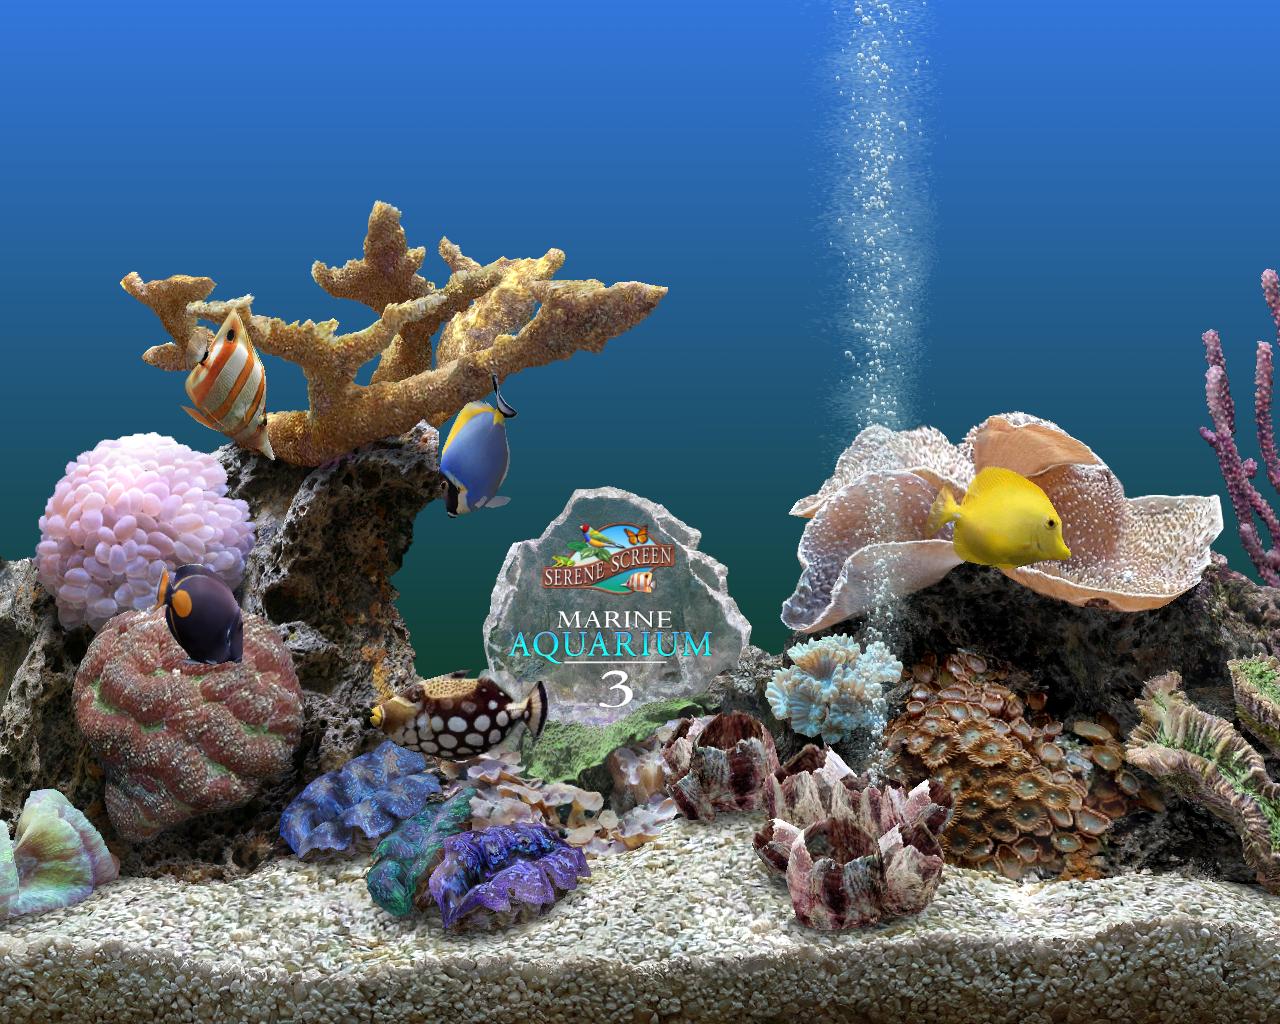 Pictures Image And Photos Marine Aquarium Screensaver